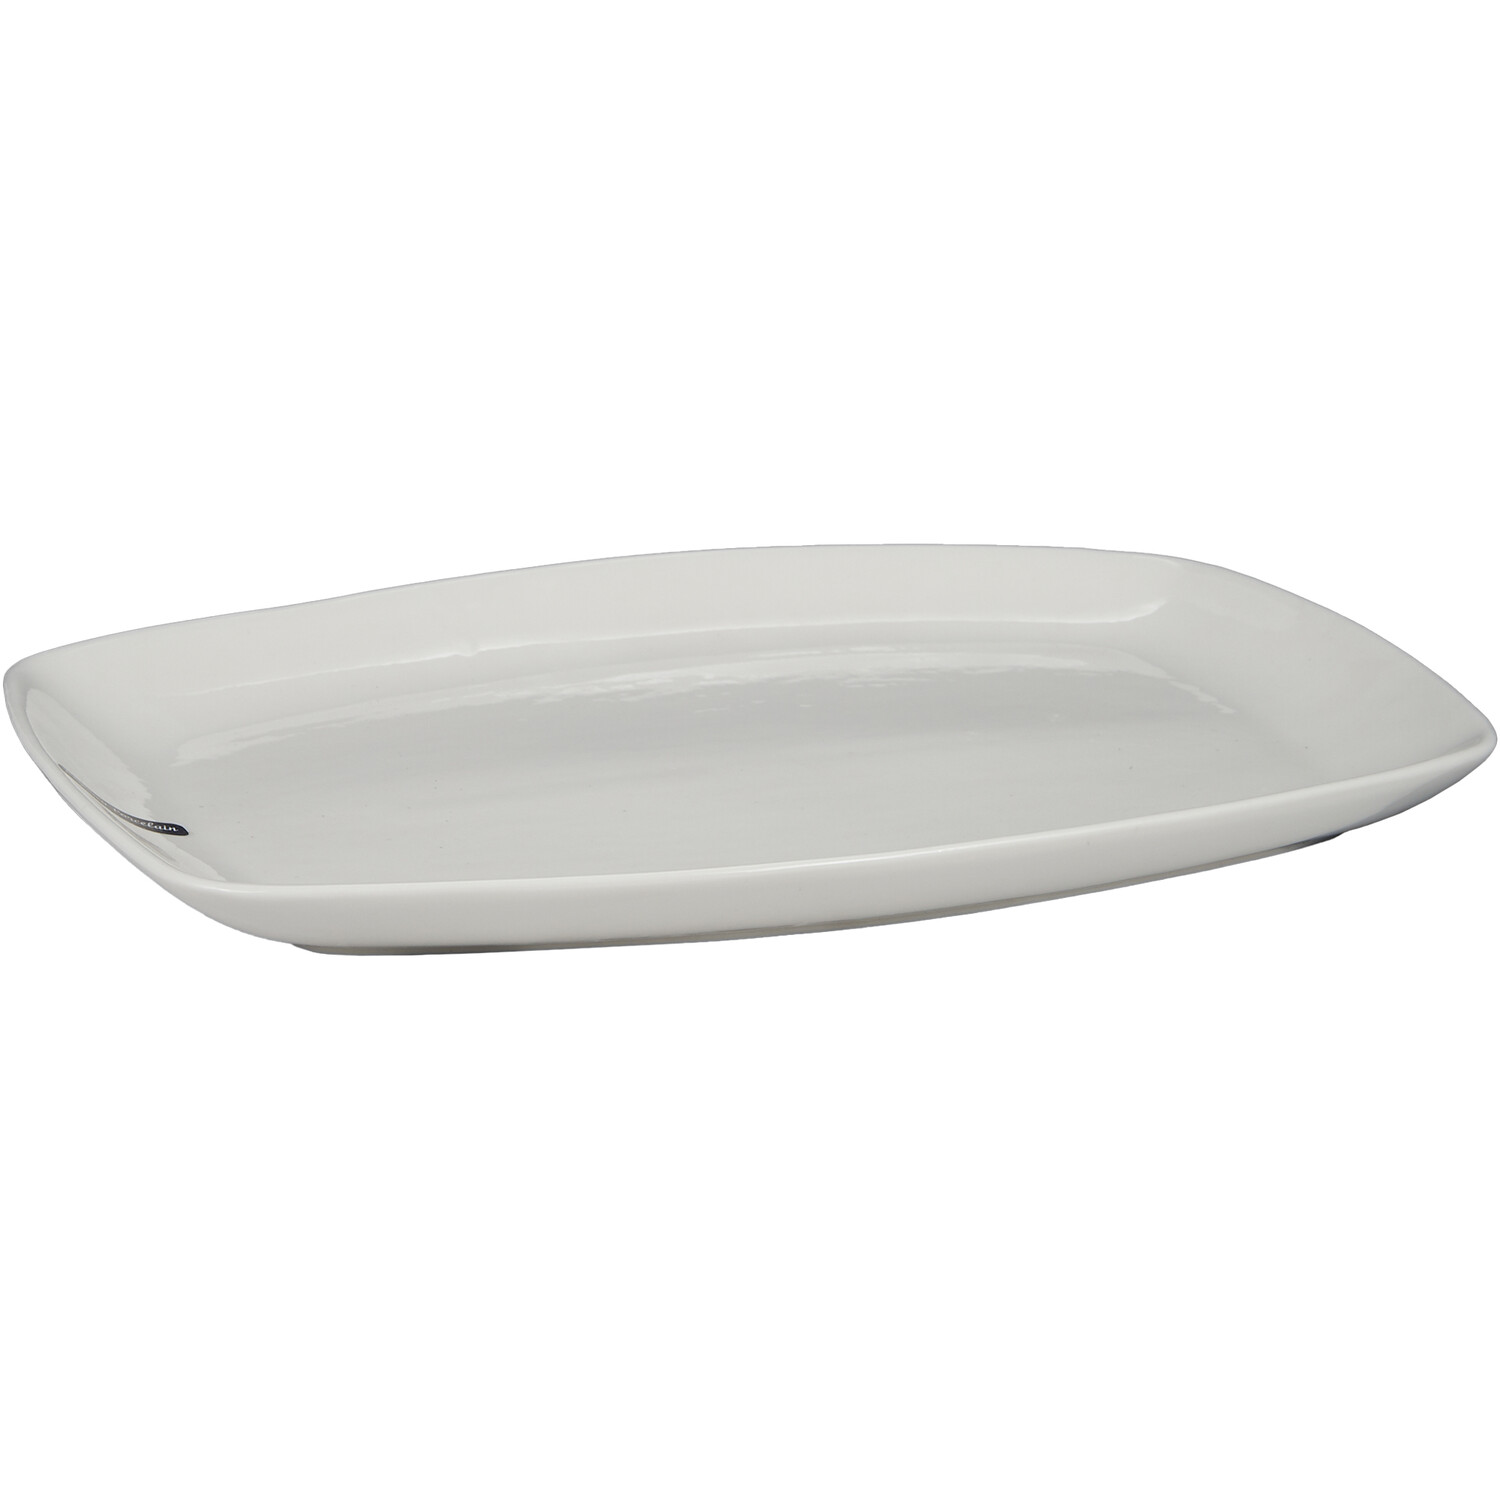 Regency Porcelain White Oval Platter 34.6cm Image 2